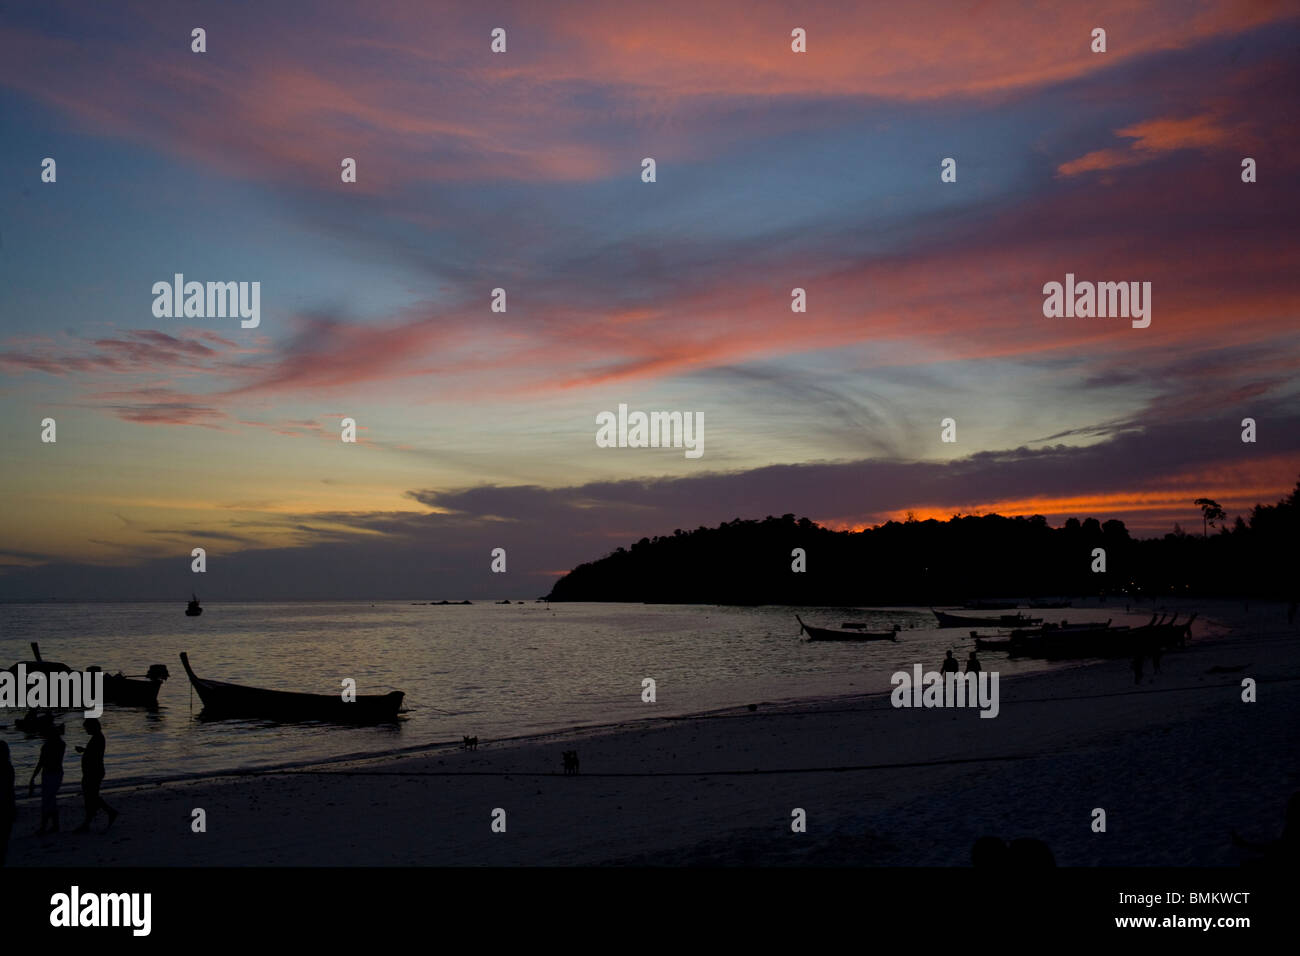 Sundown on Koh Lipe island, Thailand. Stock Photo